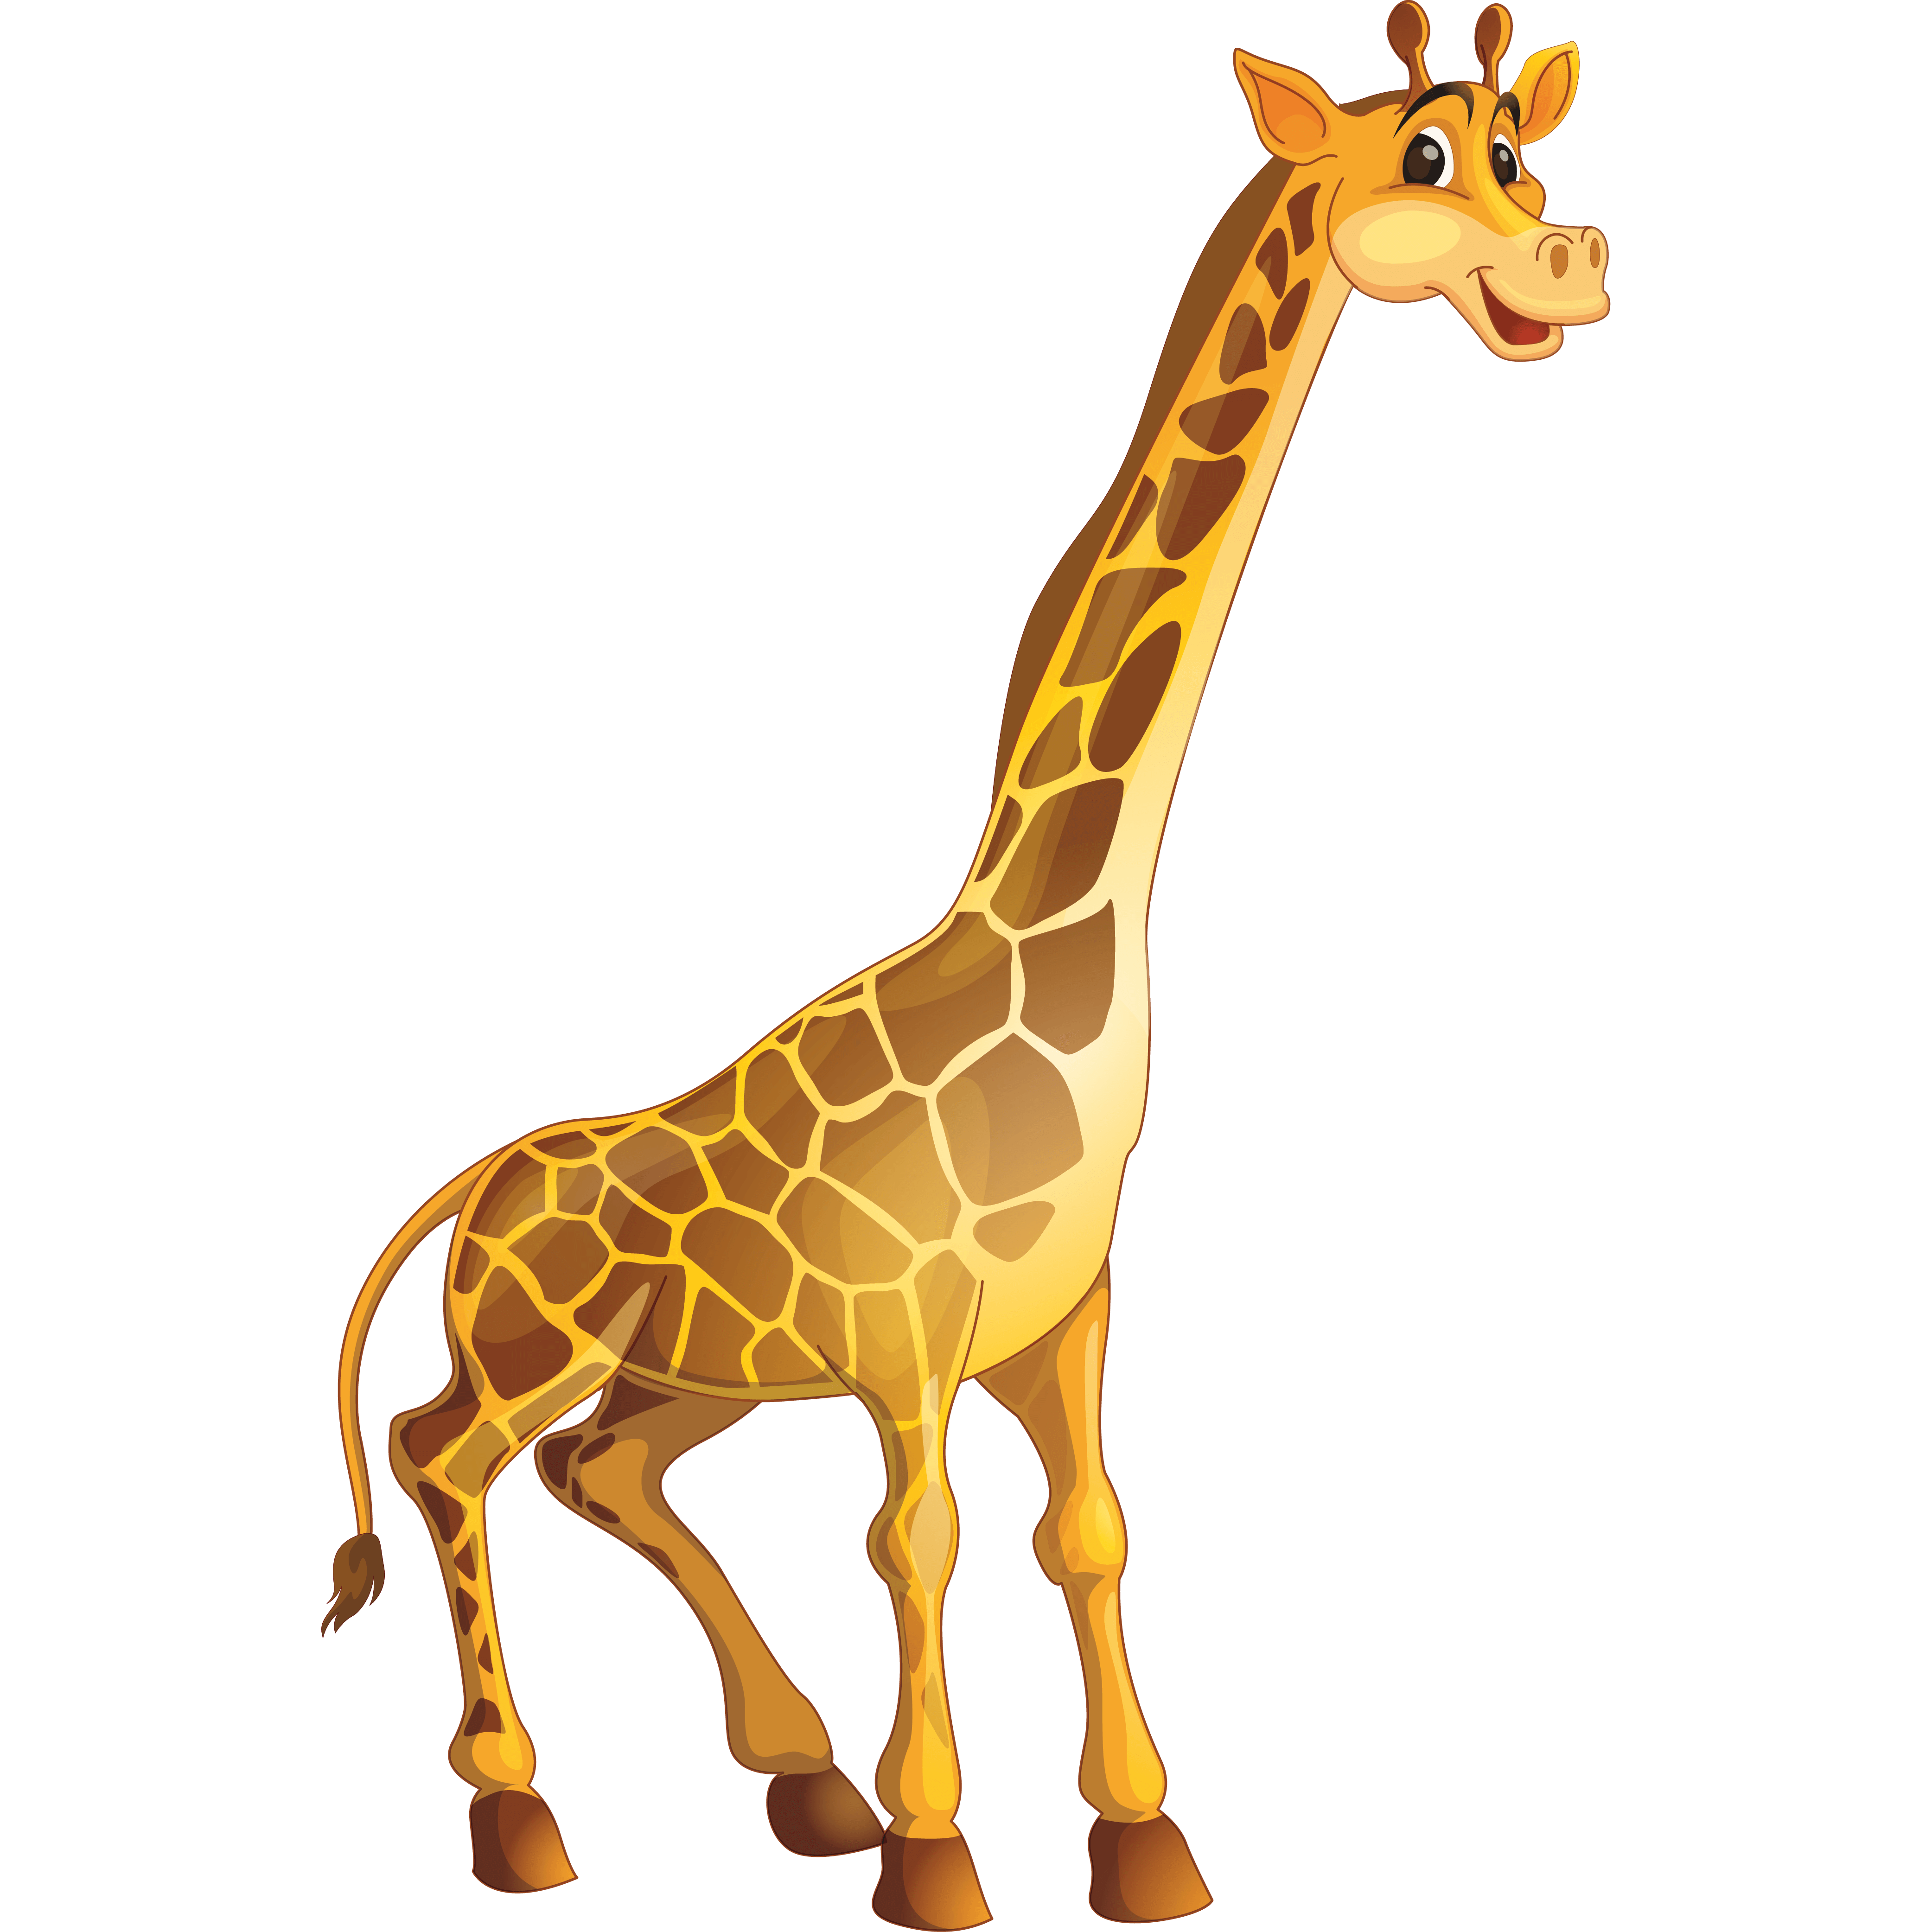 cartoon giraffe transparent background, giraffe png clipart, elephant transparent background, giraffe vector png, giraffe cartoon png, giraffe clipart transparent background, giraffe vector png, giraffe hd png, zebra transparent background, transparent background giraffe png,